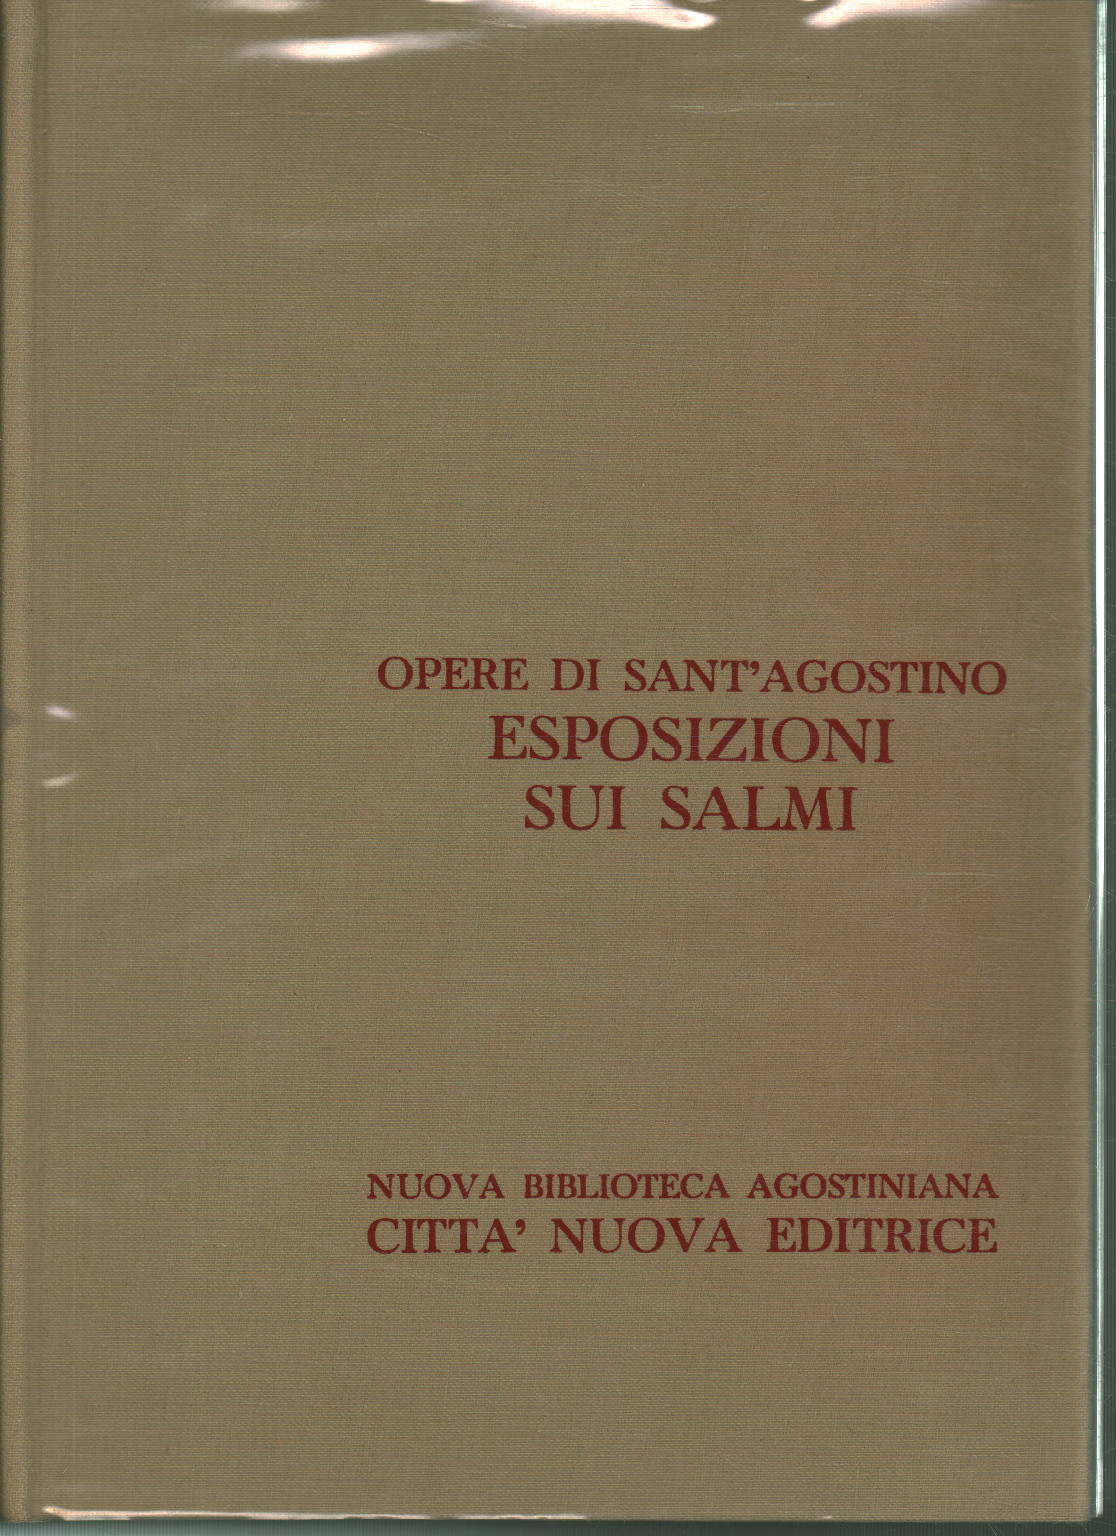 Works of Sant'Agostino XXV. Exp